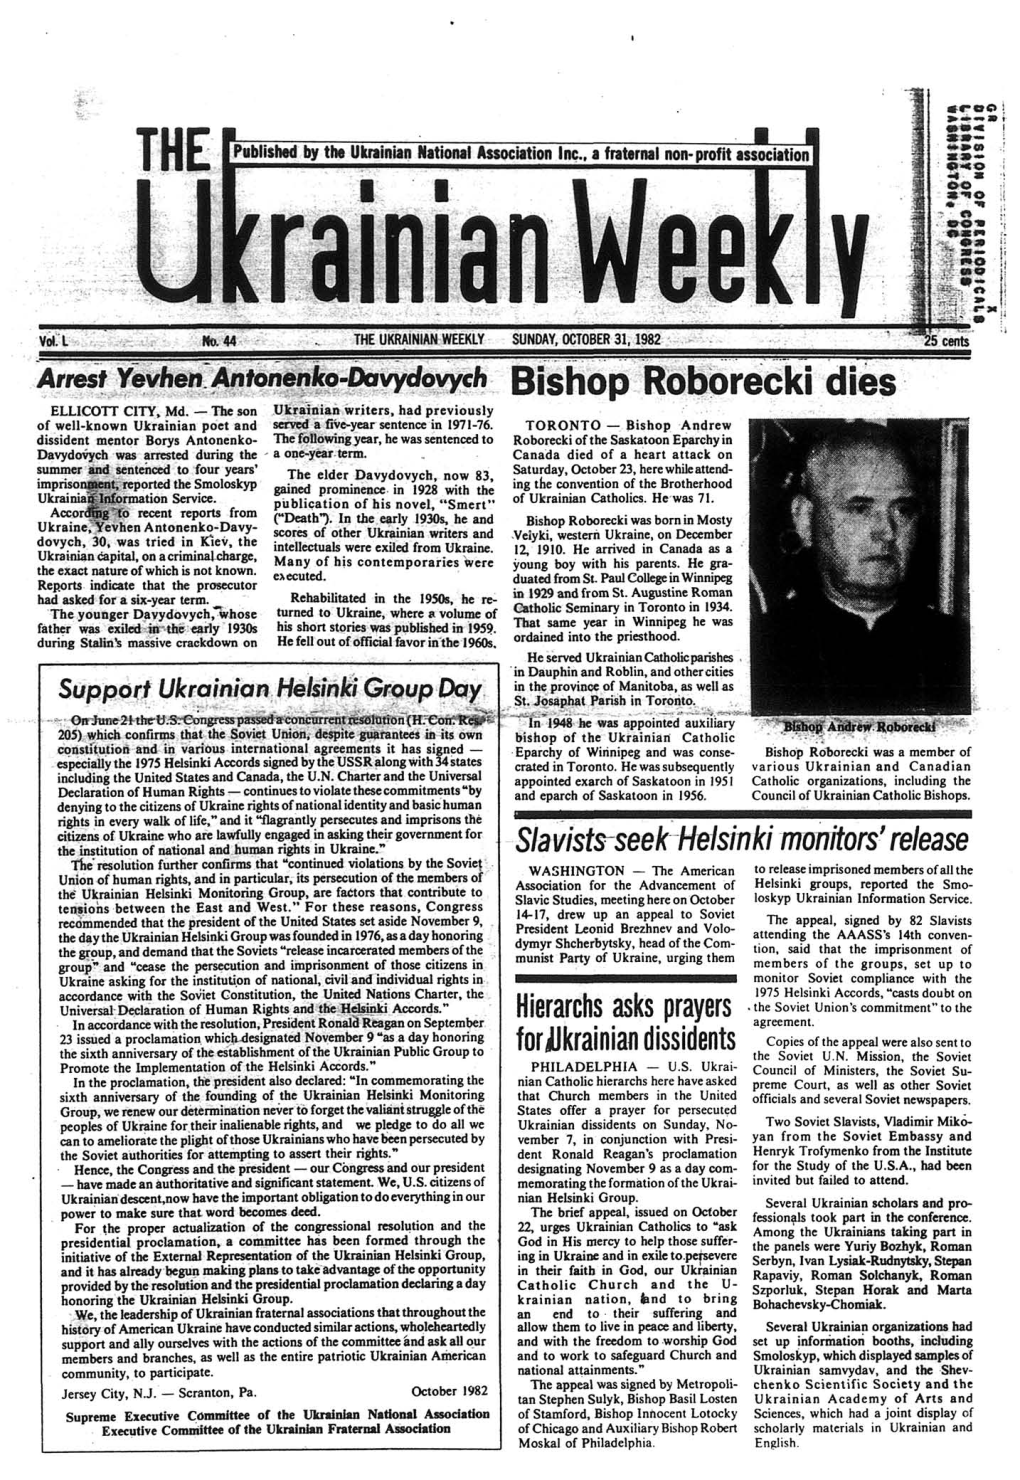 The Ukrainian Weekly 1982